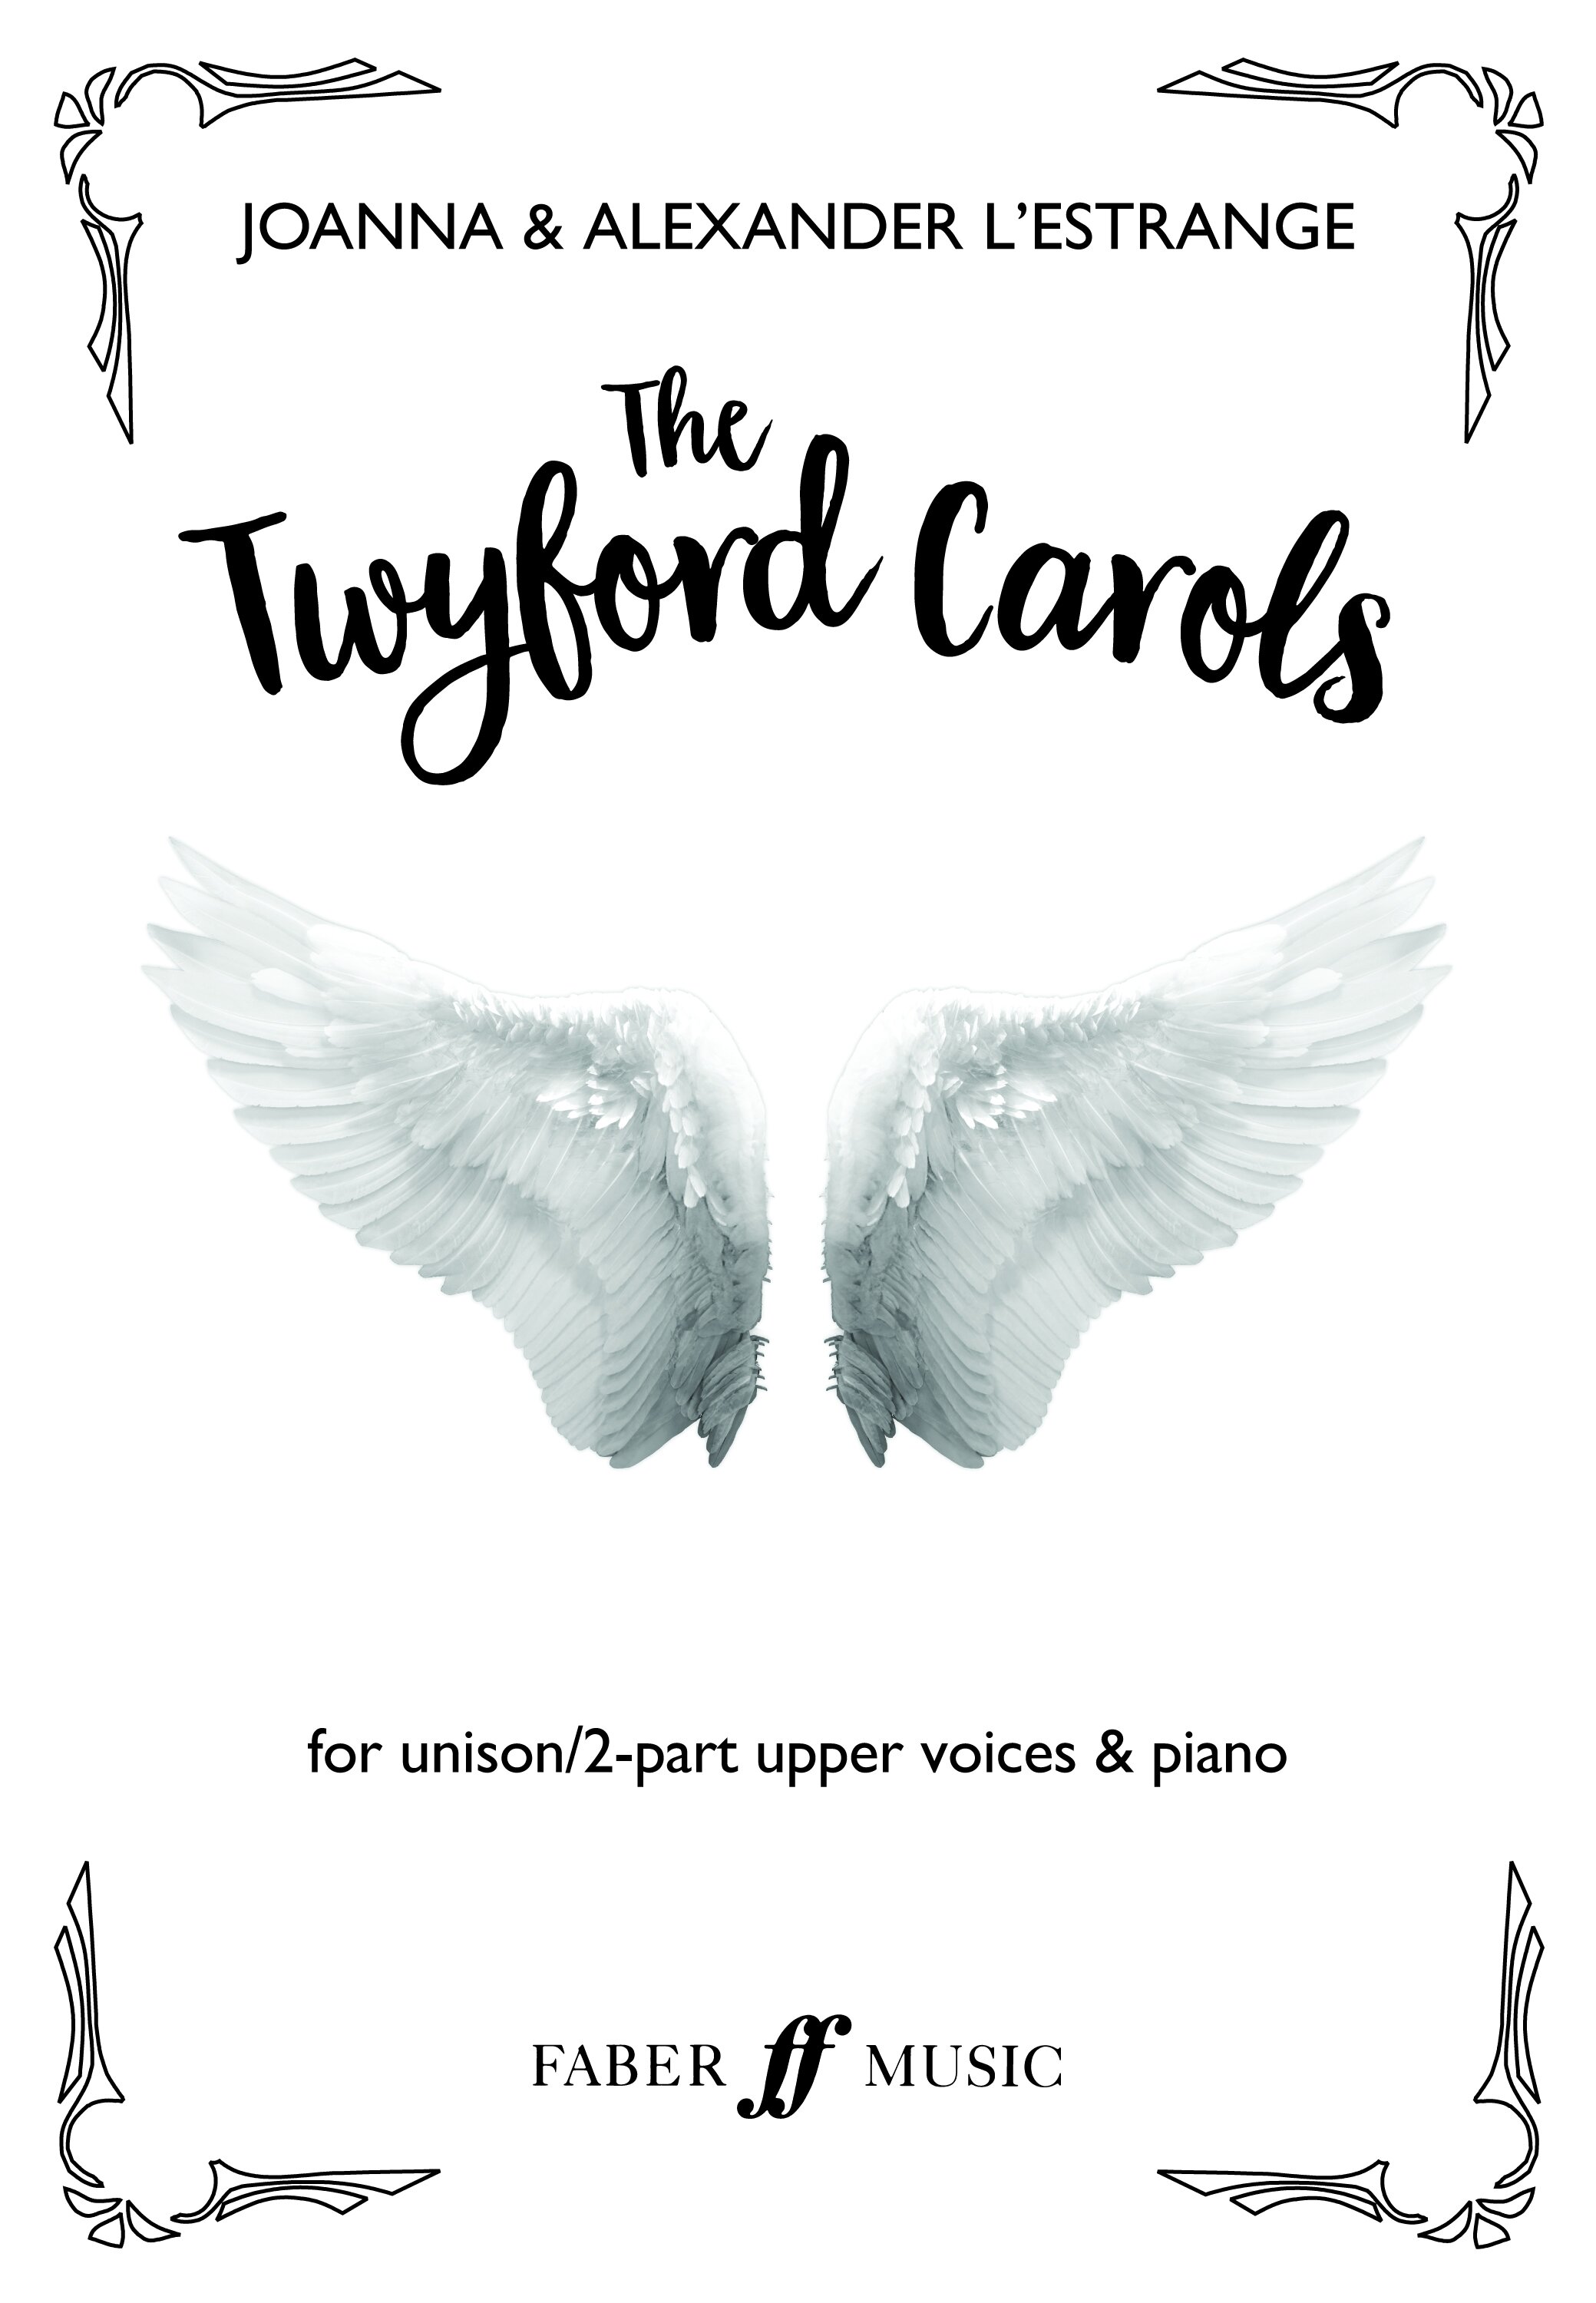 The Twyford Carols COVER.jpg